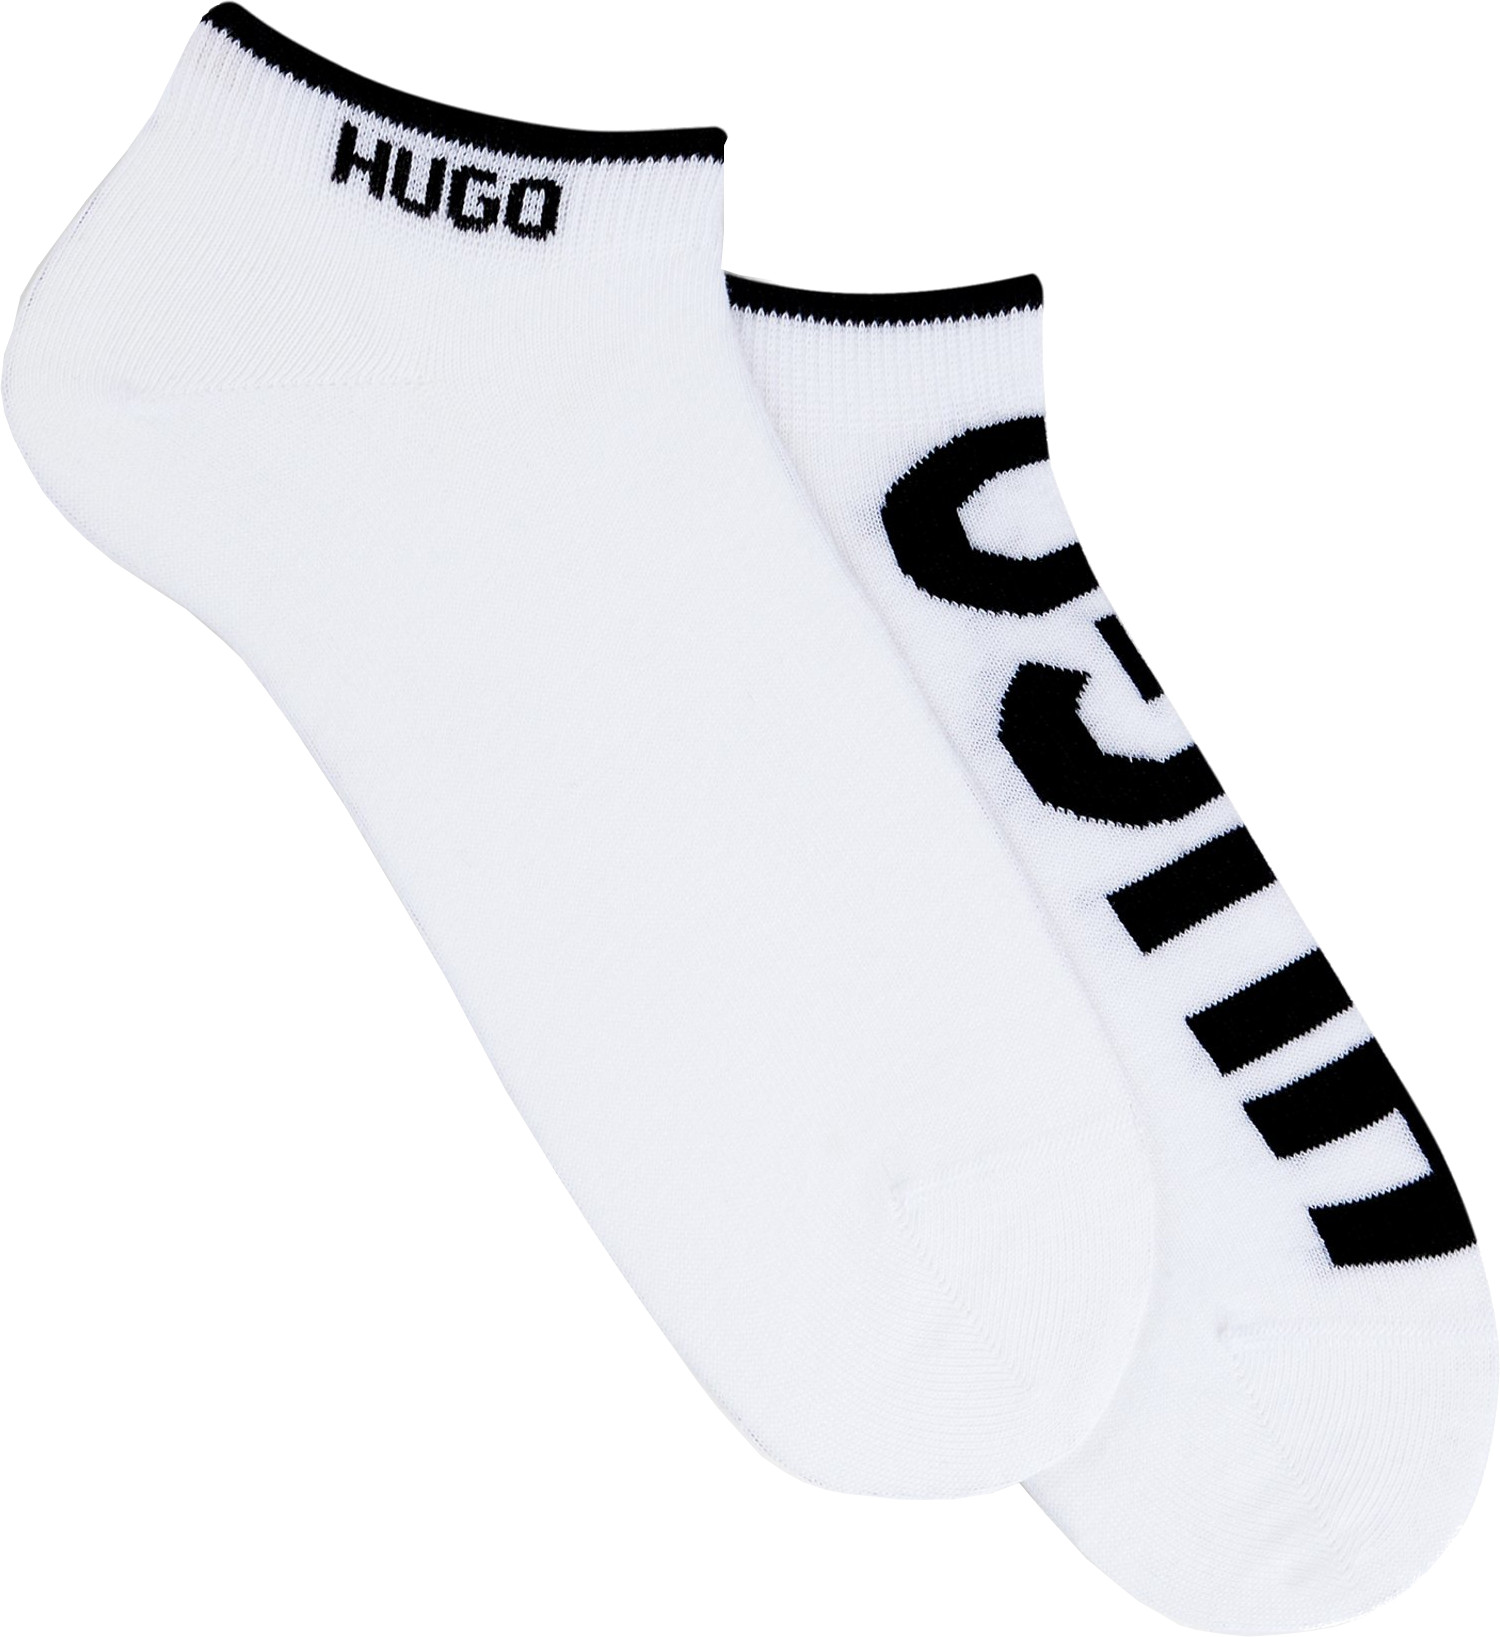 Hugo Boss 2 PACK - pánske ponožky HUGO 50468111-100 43-46